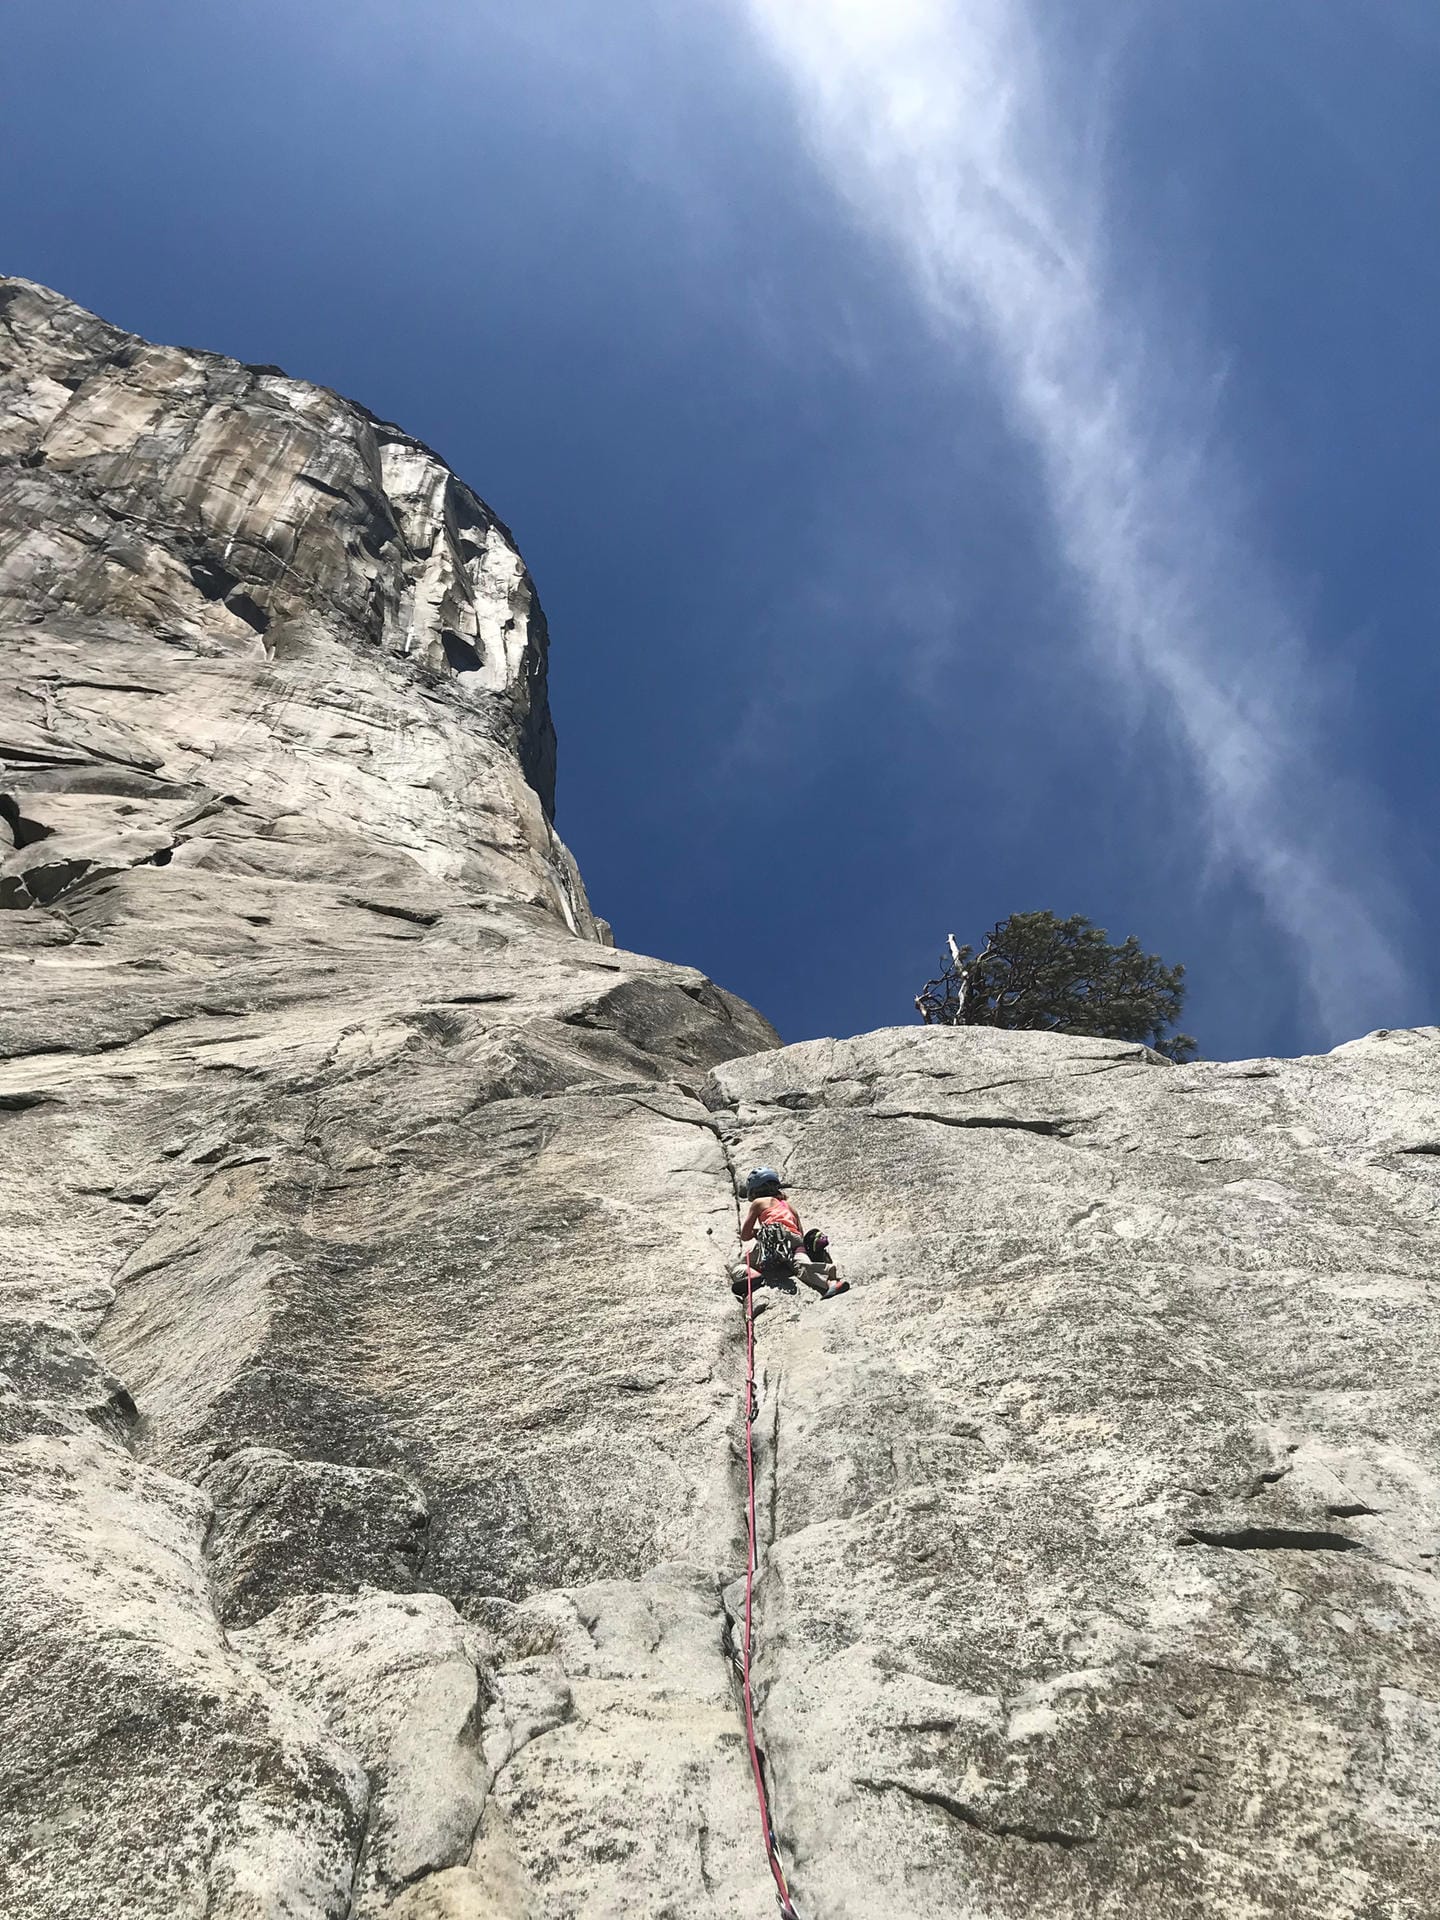 Die zehnjährige Selah Schneiter wagt den Aufstieg auf den 1.000 Meter hohen "El Capitan" im US-Nationalpark Yosemite.